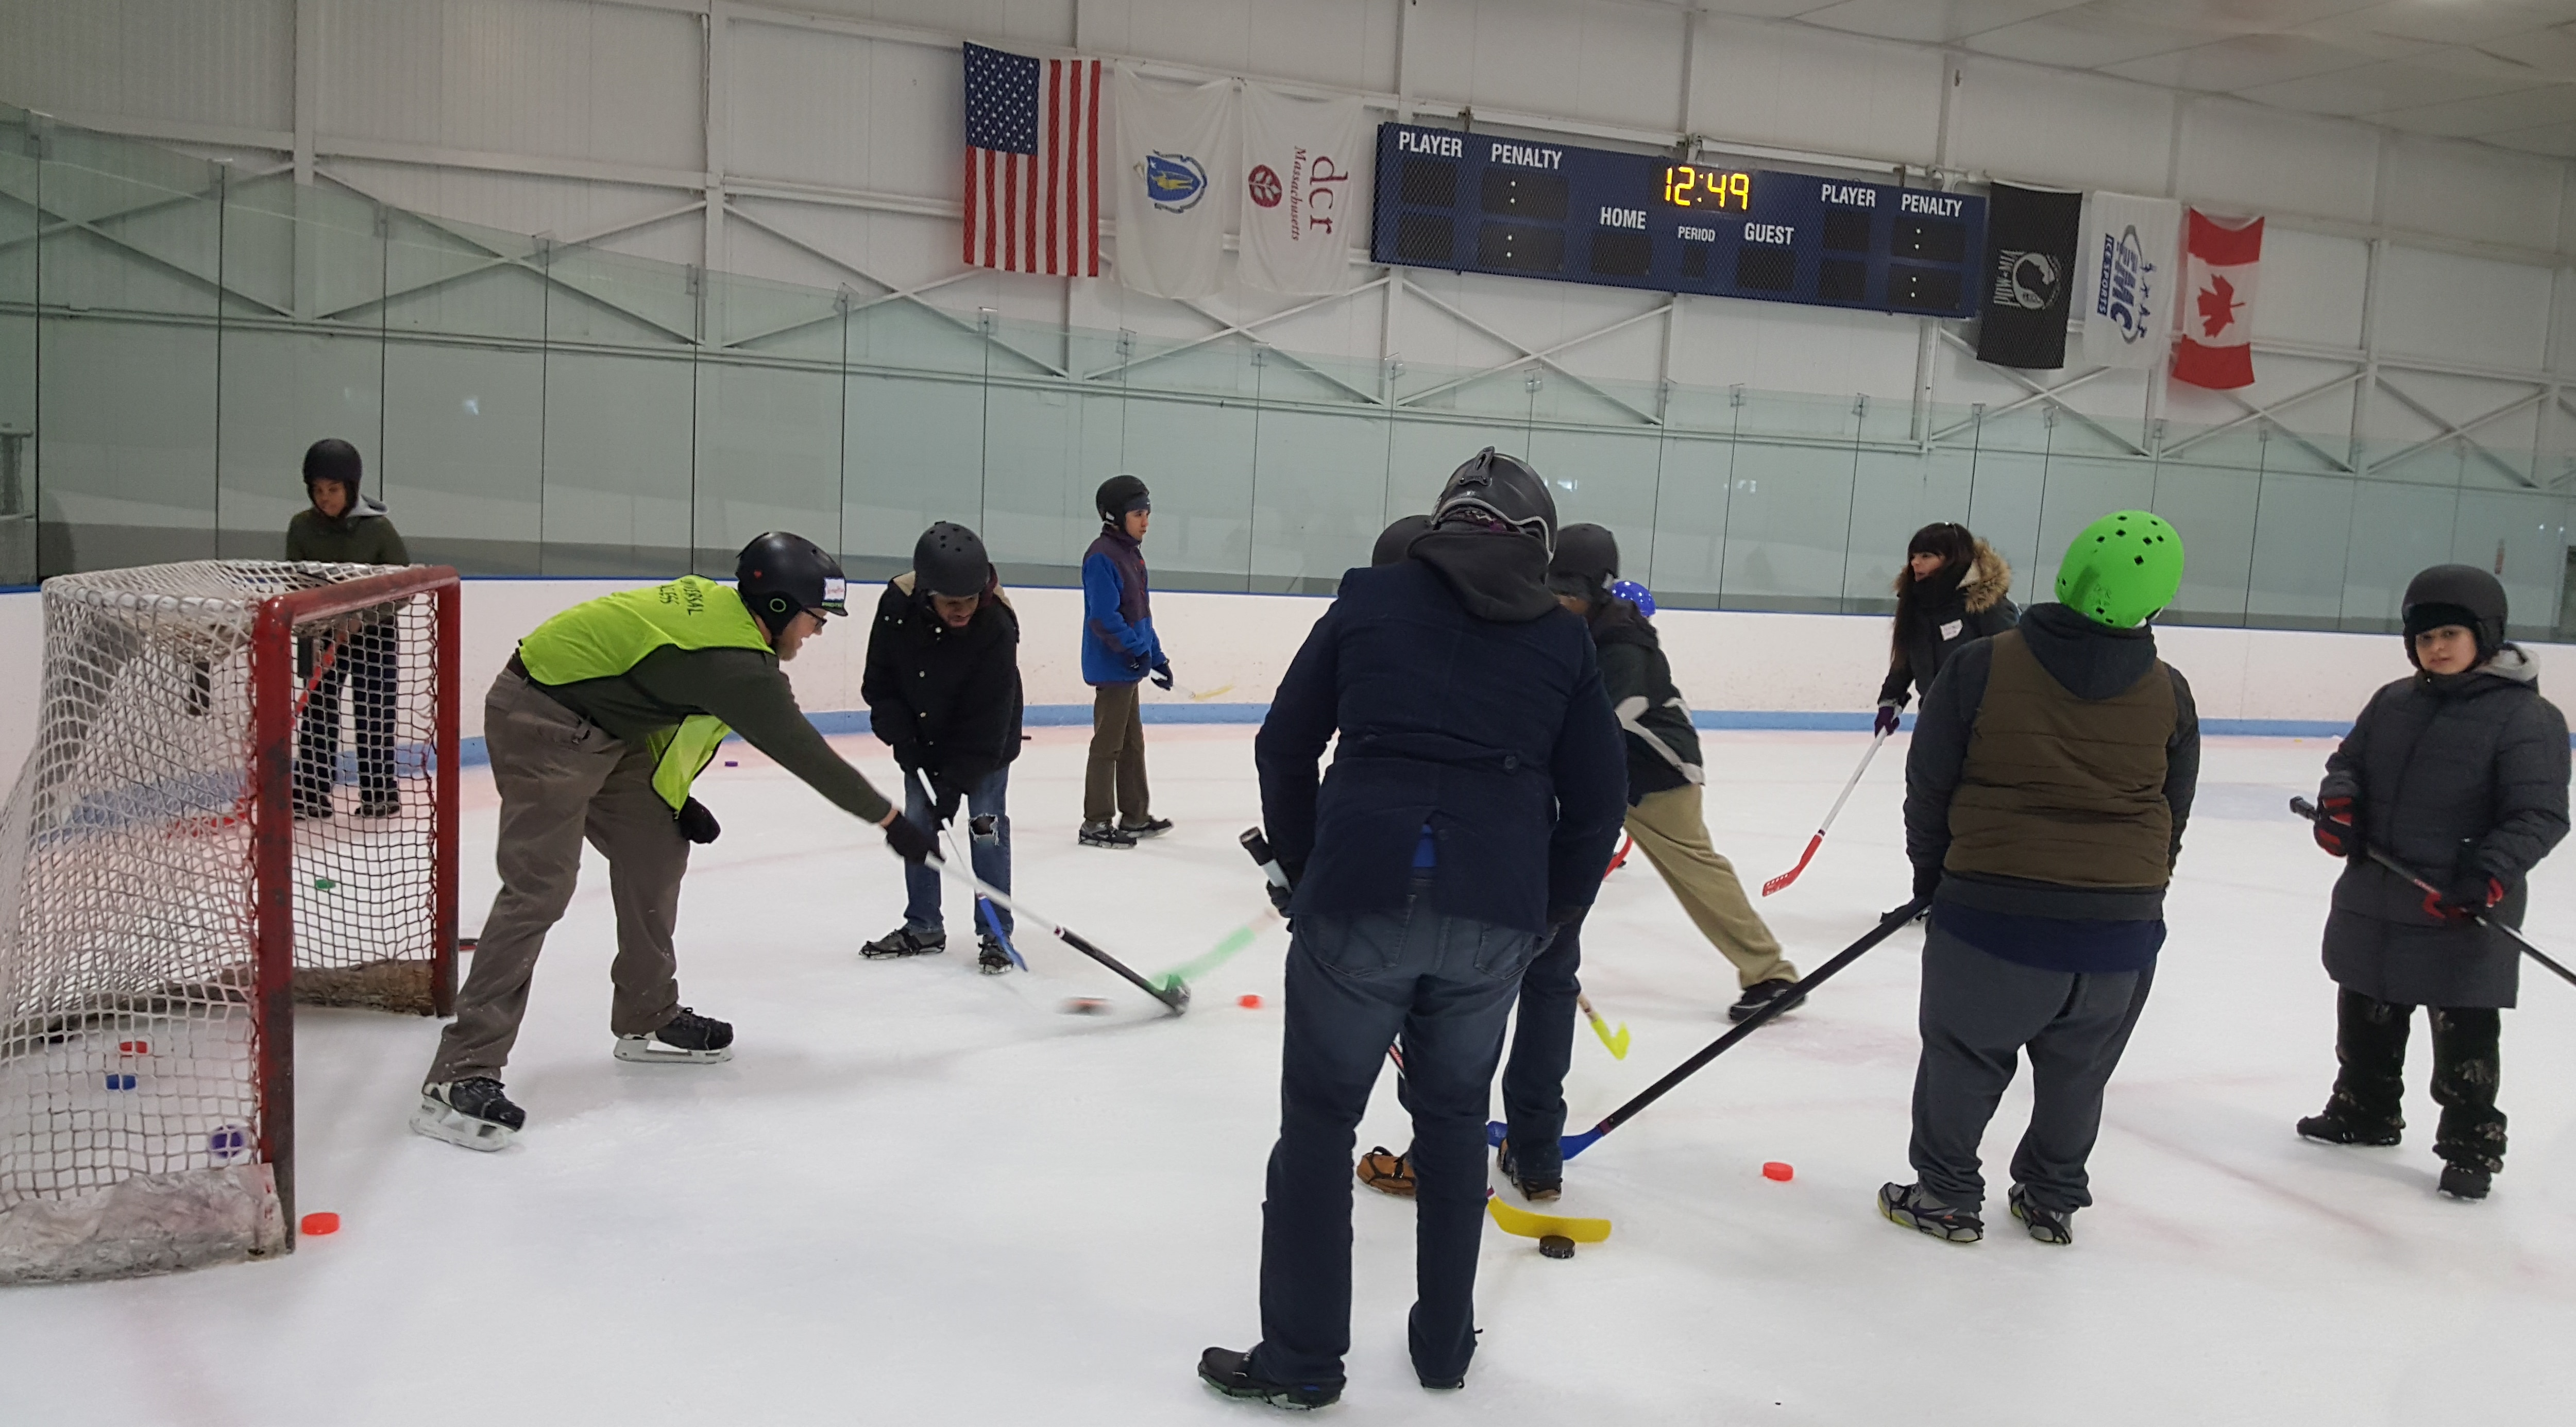 Adaptive ice skating programs